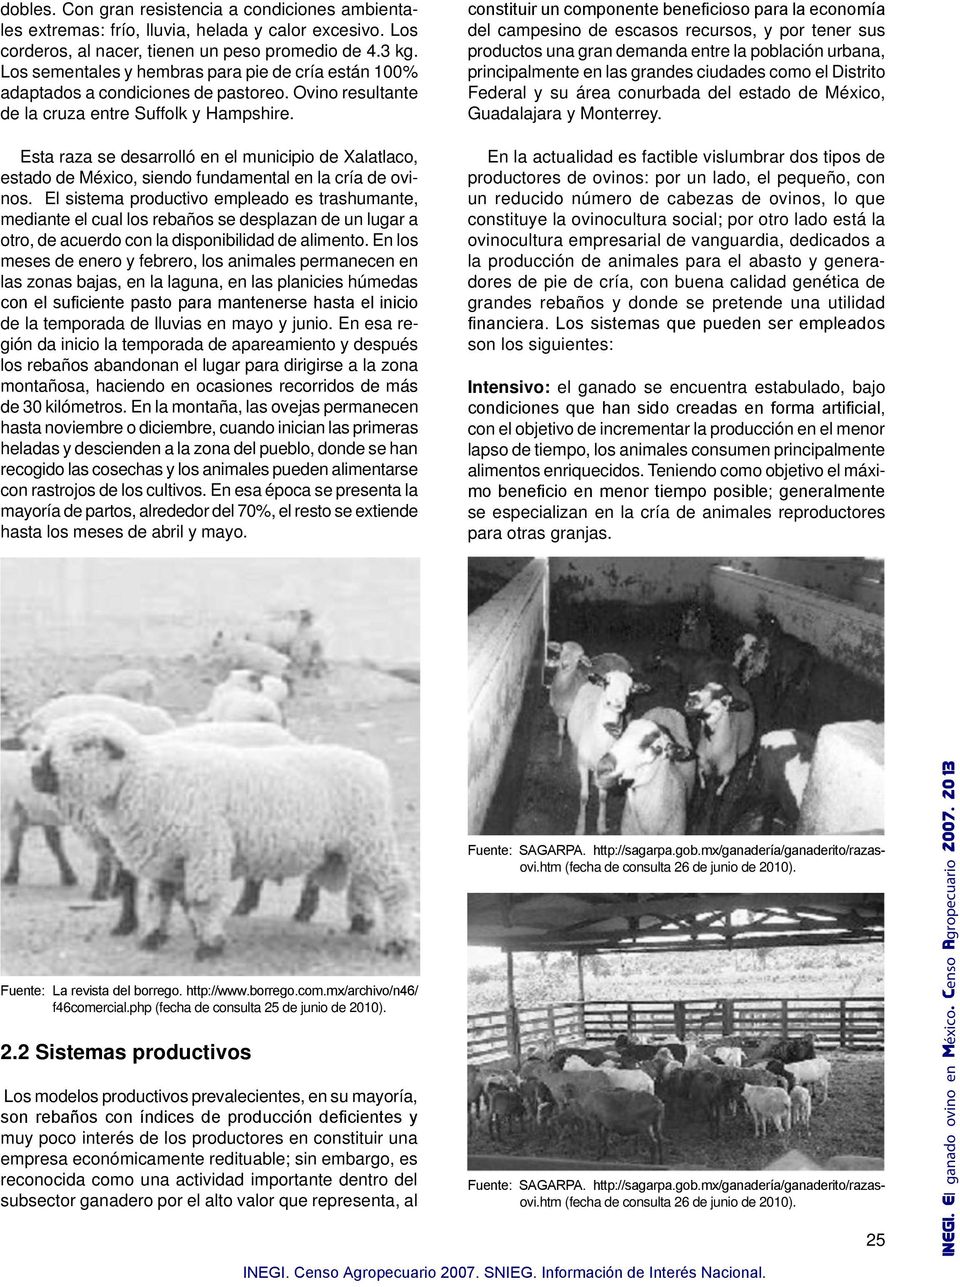 Esta raza se desarrolló en el municipio de Xalatlaco, estado de México, siendo fundamental en la cría de ovinos.